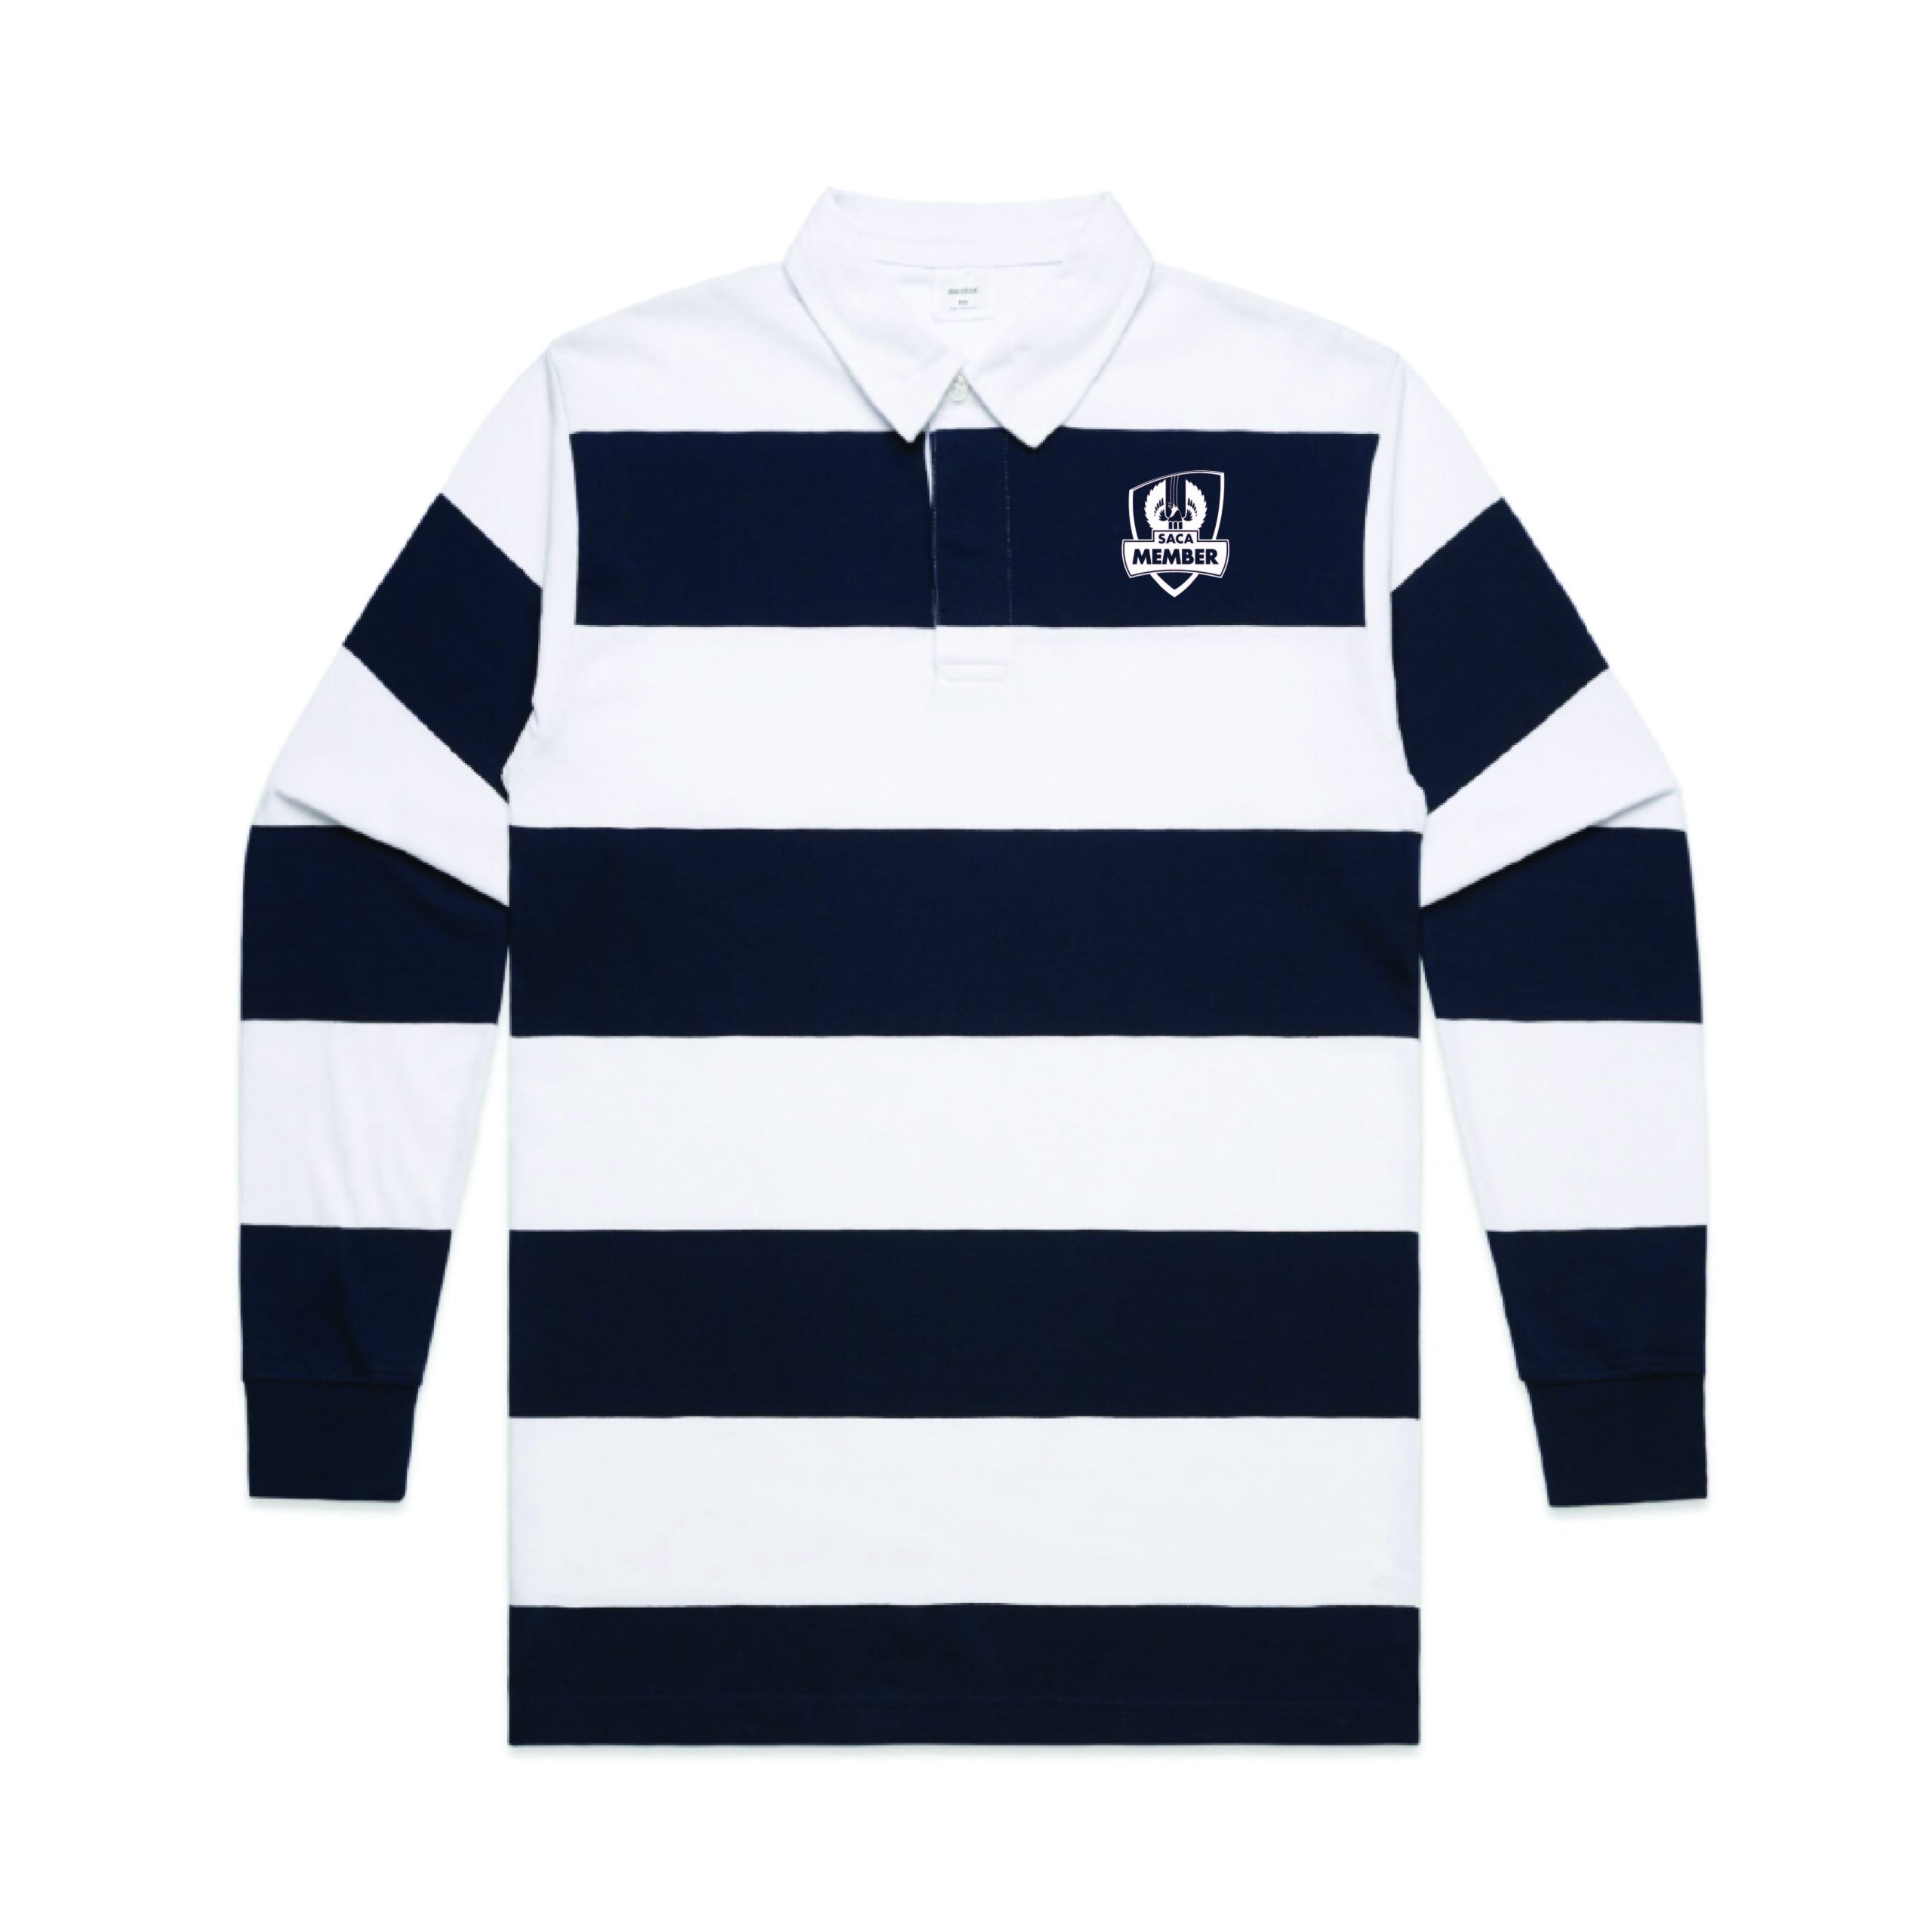 SACA Member – Mens Stripe Rugby Top – SACA Merchandise Store